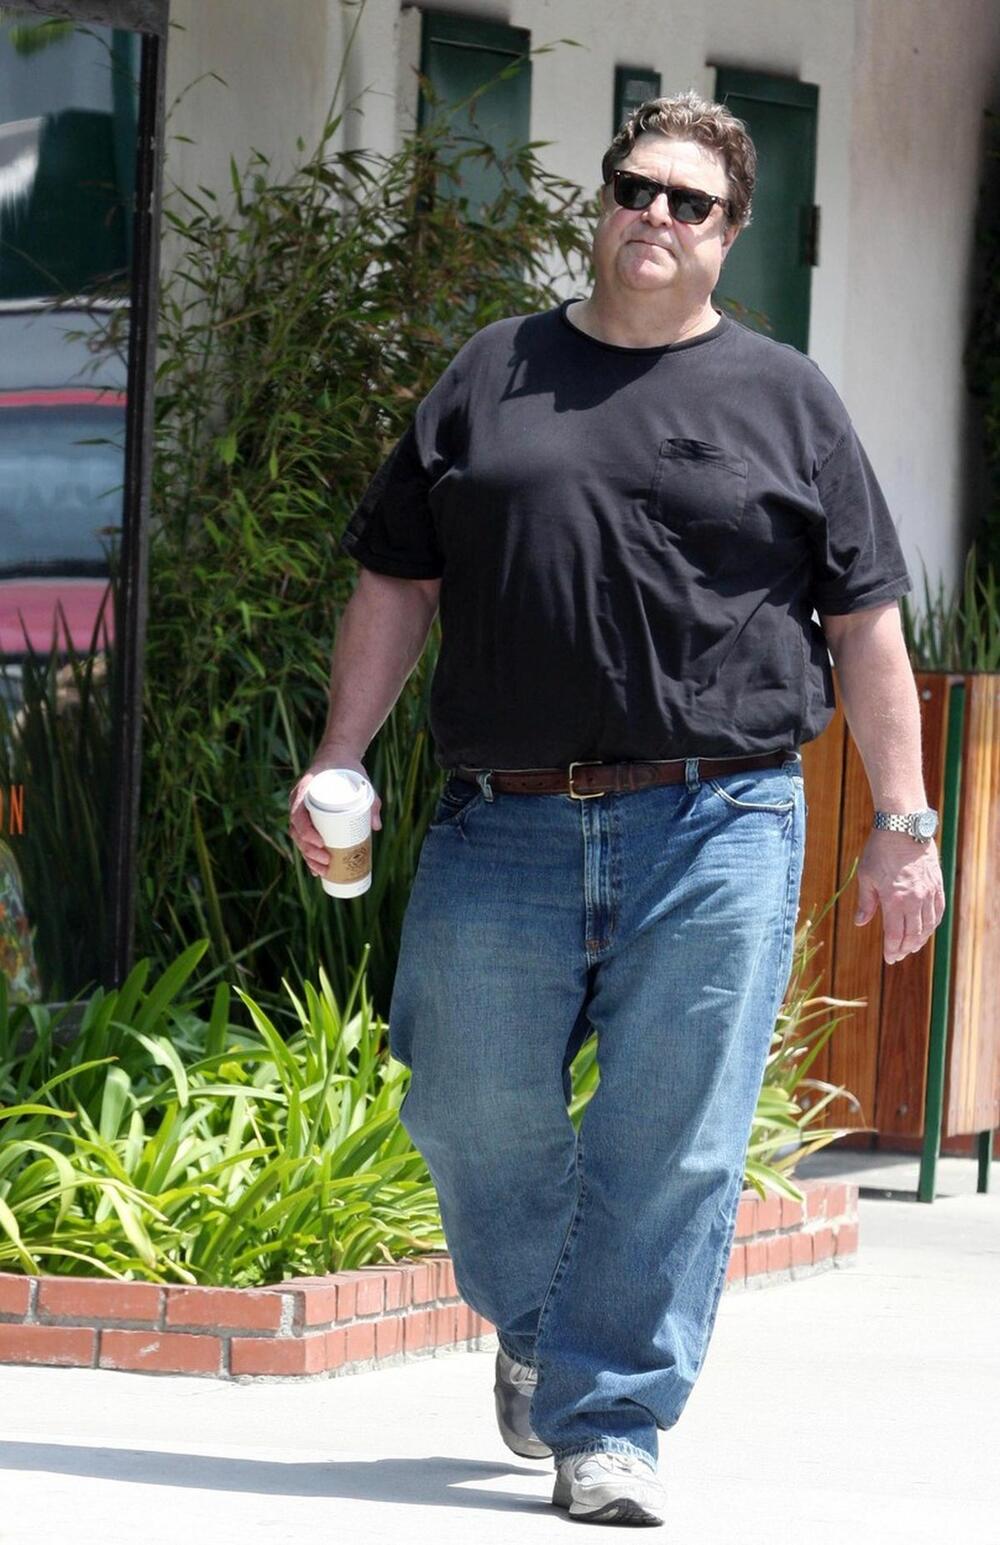 Džon Gudman je u jednom trenutku imao čak 180 kilograma